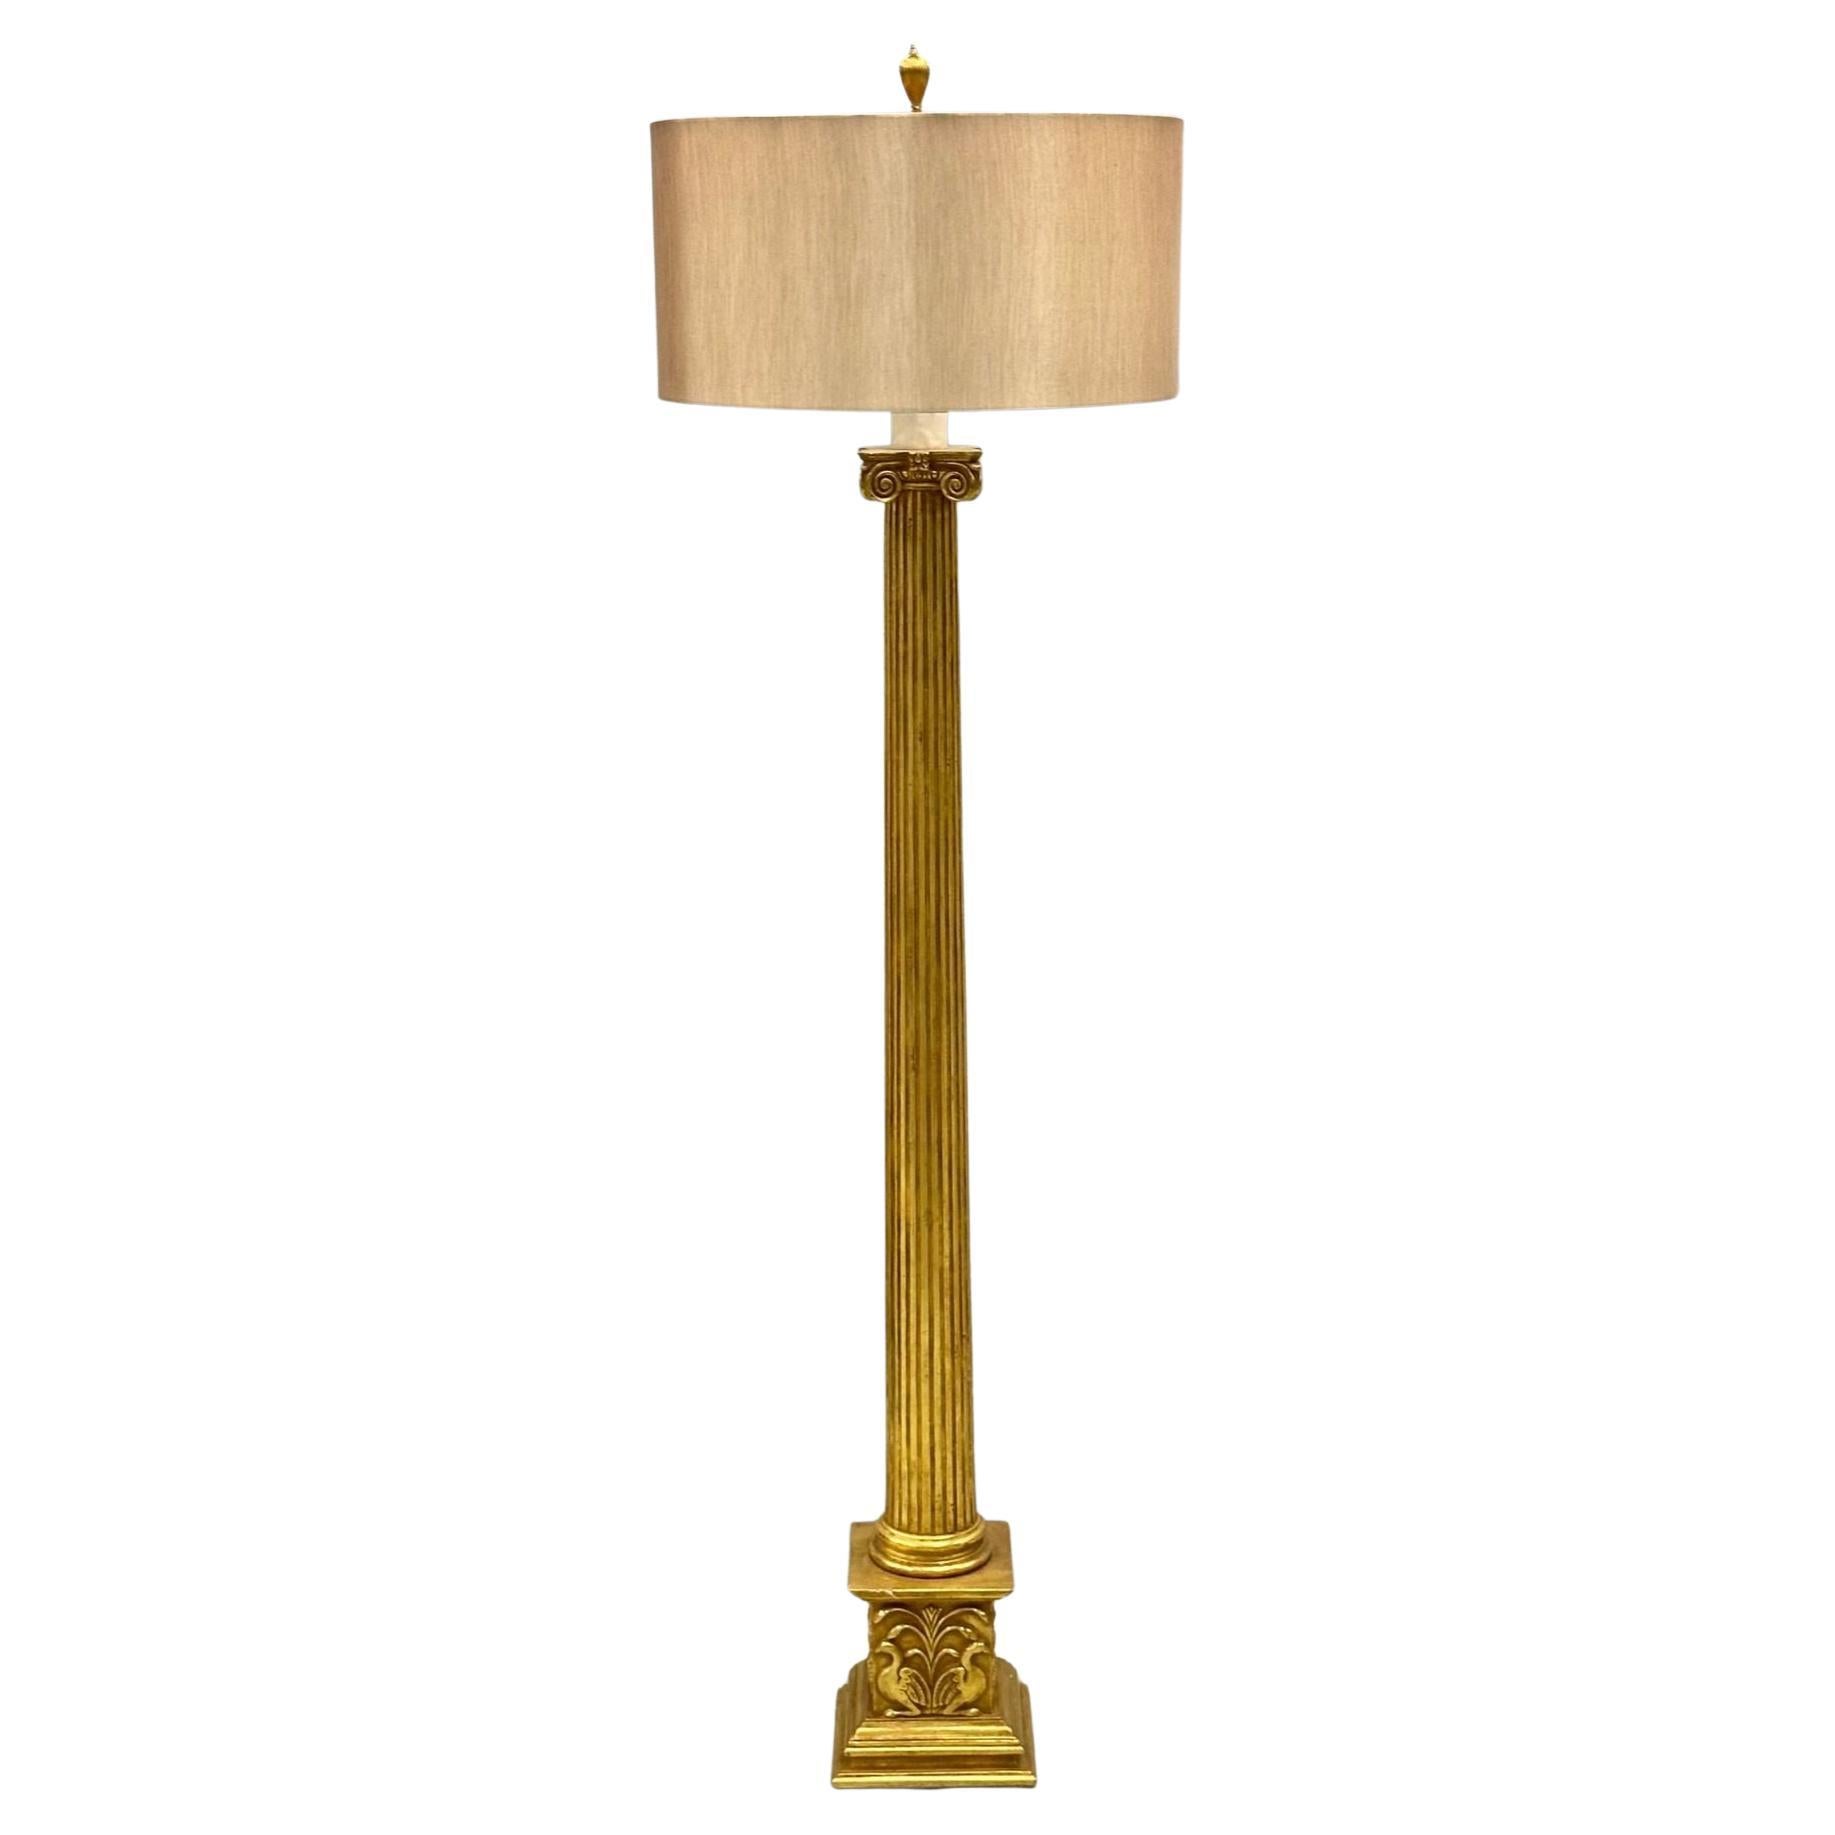 Grand lampadaire français de style Hollywood Regency en bois doré sculpté à la main